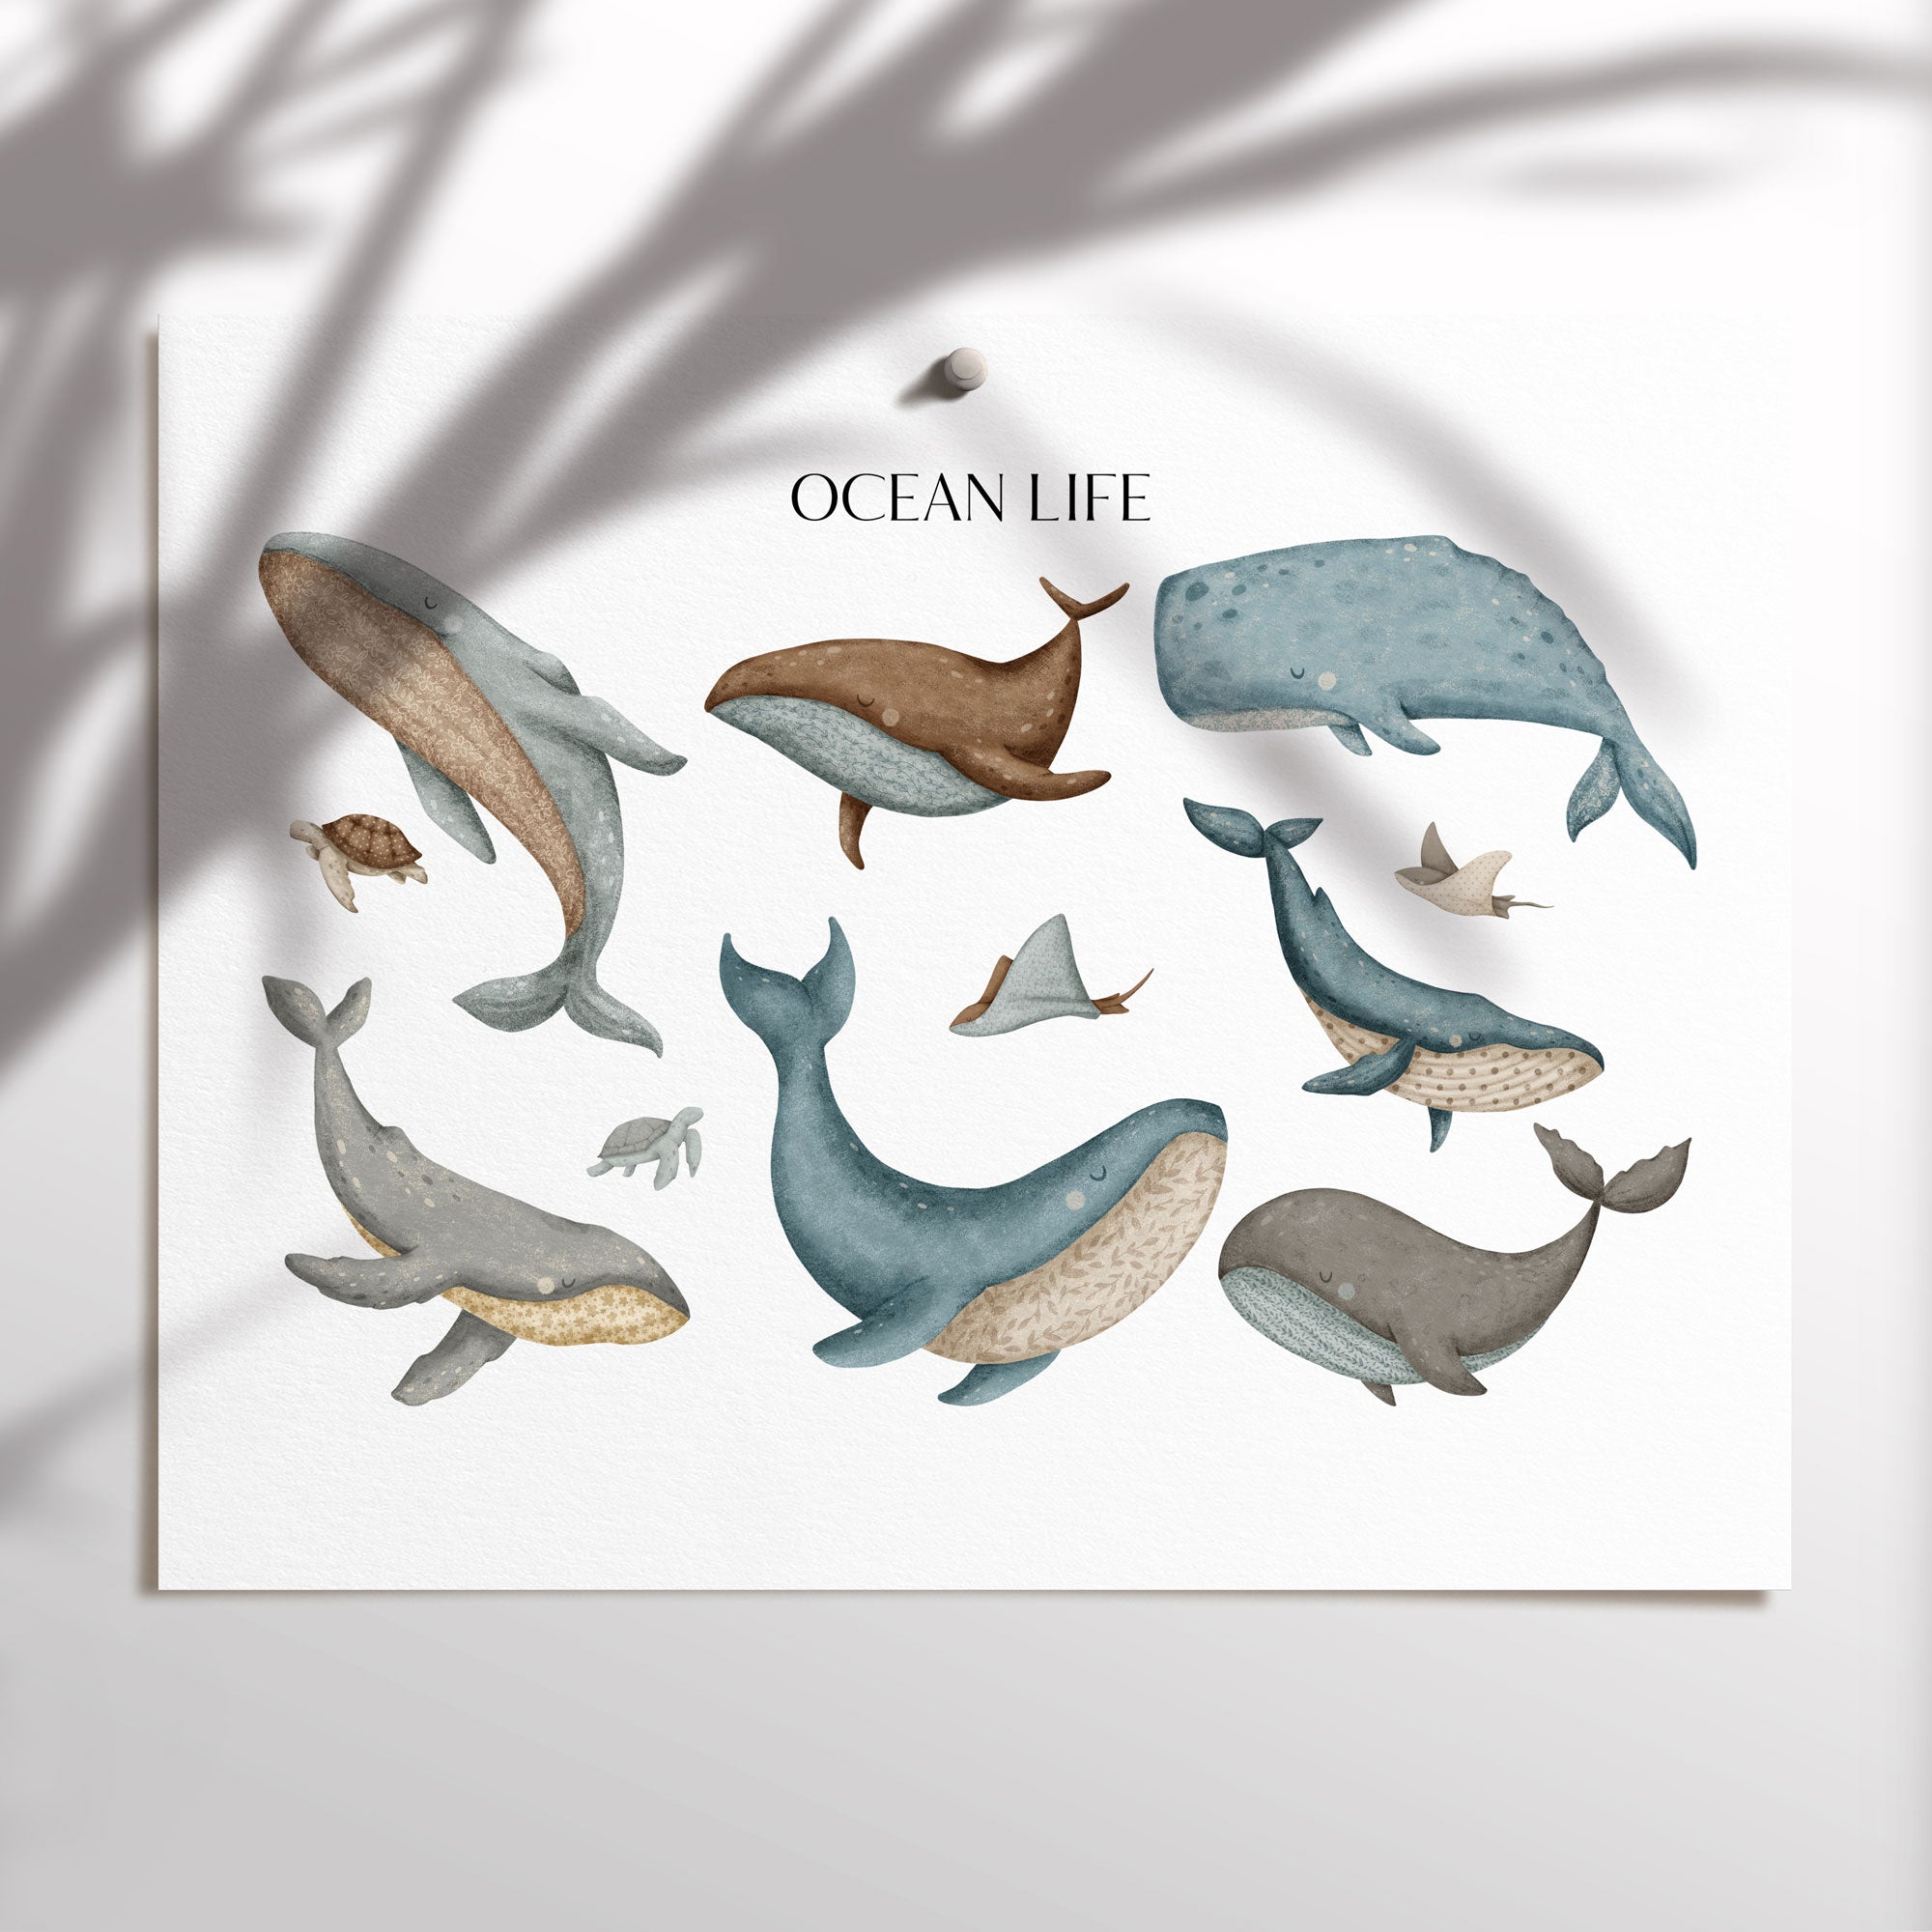 Ocean Life Print